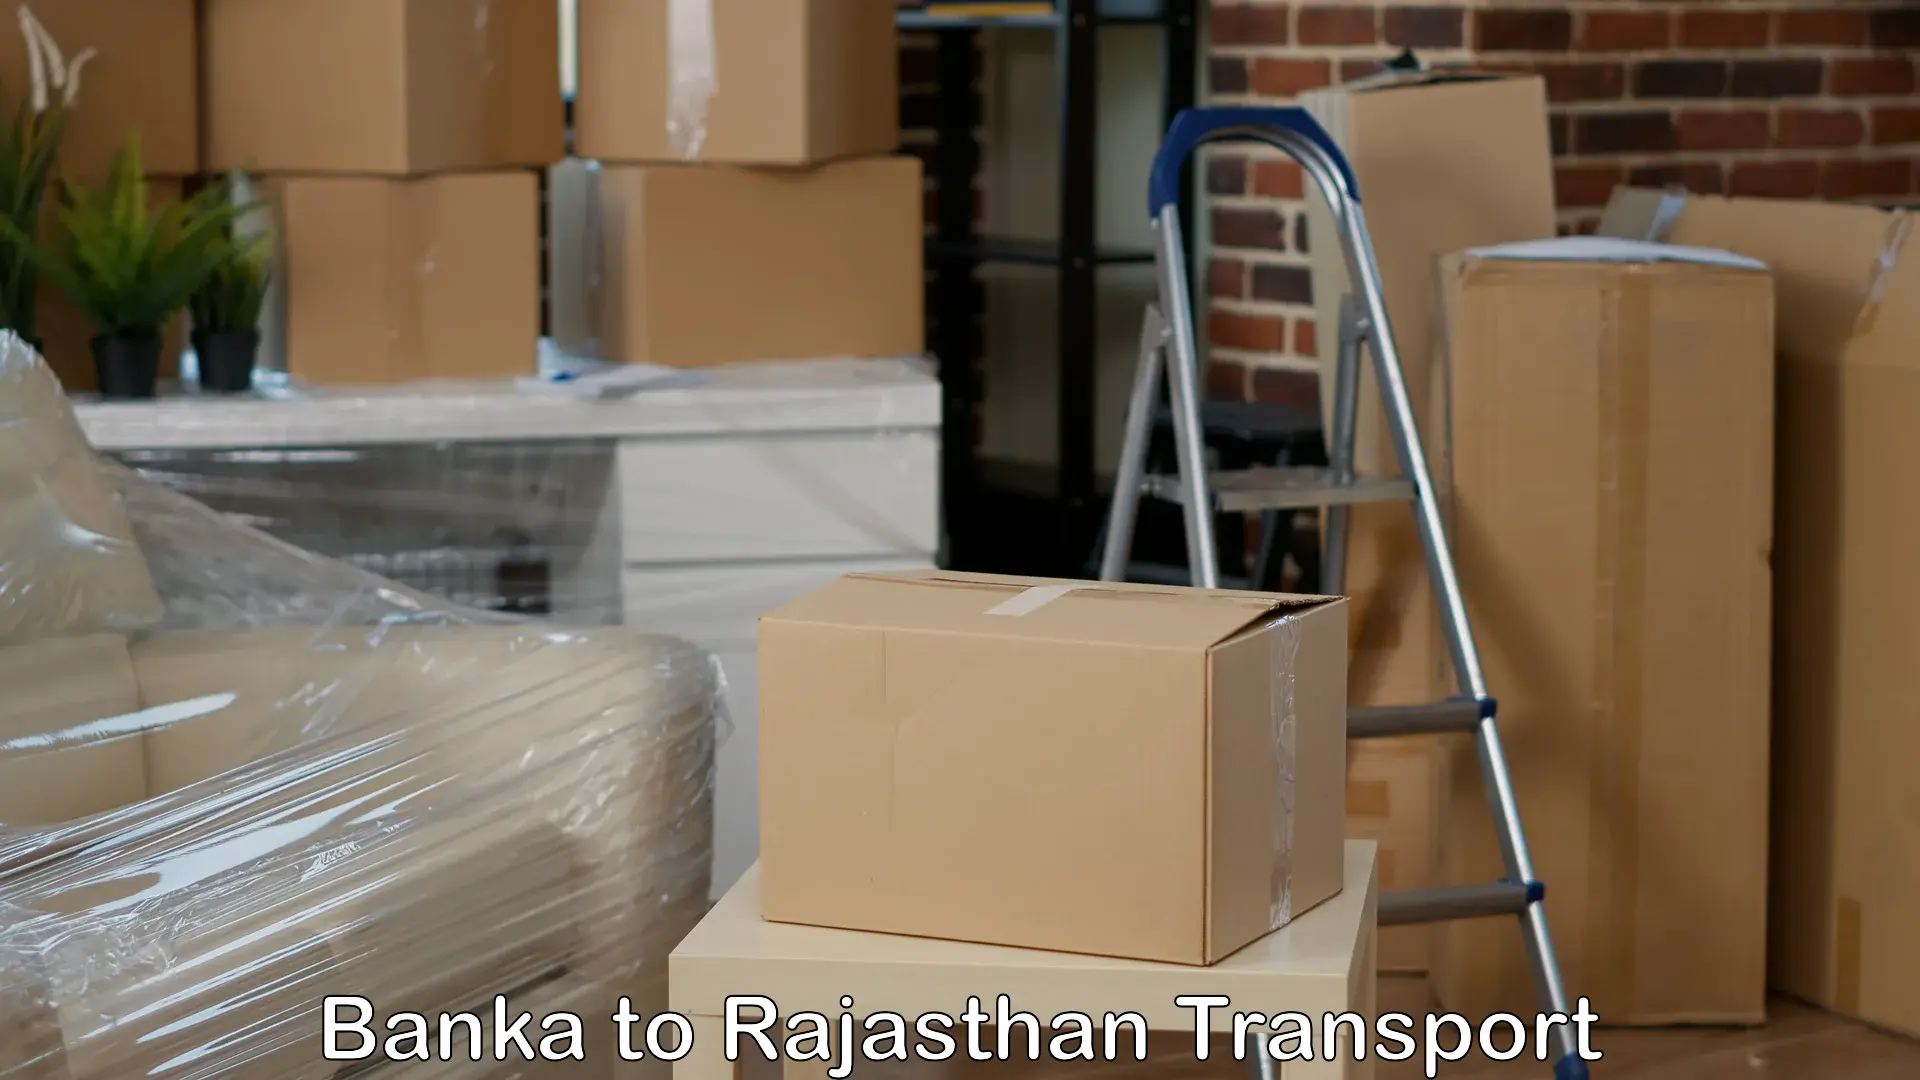 Pick up transport service Banka to Rajgarh Rajasthan